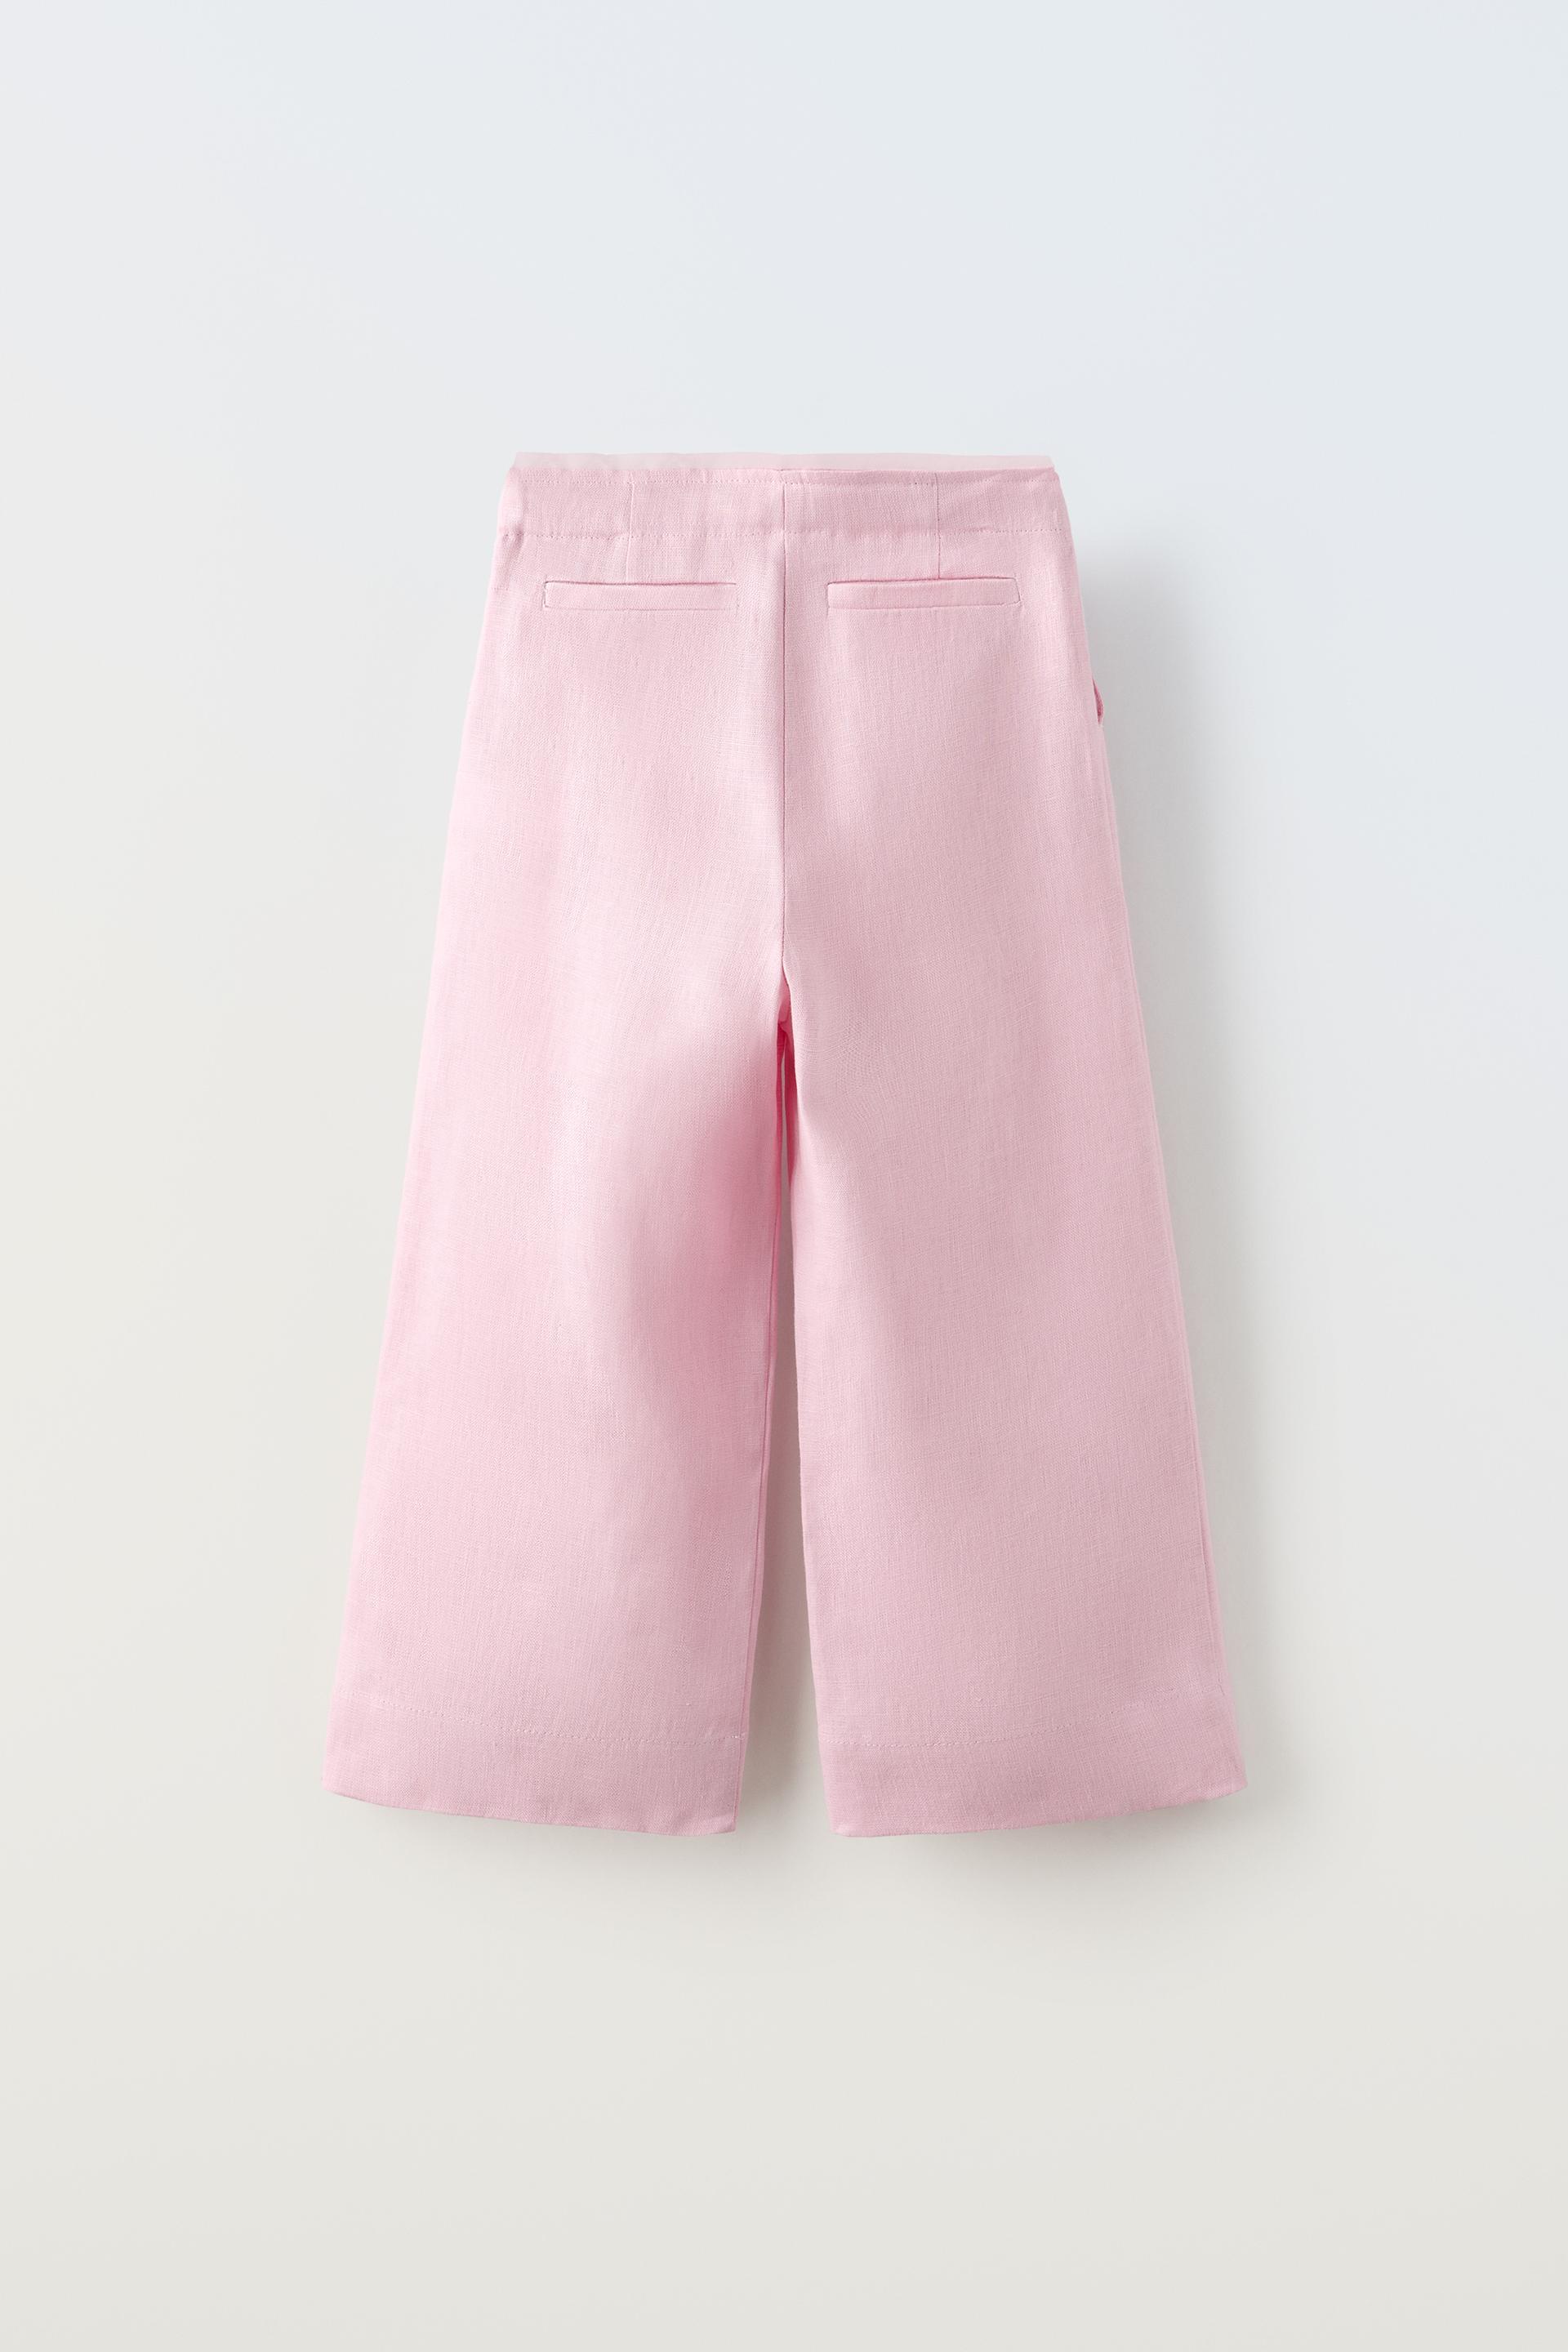 Pantalón lino rosa claro